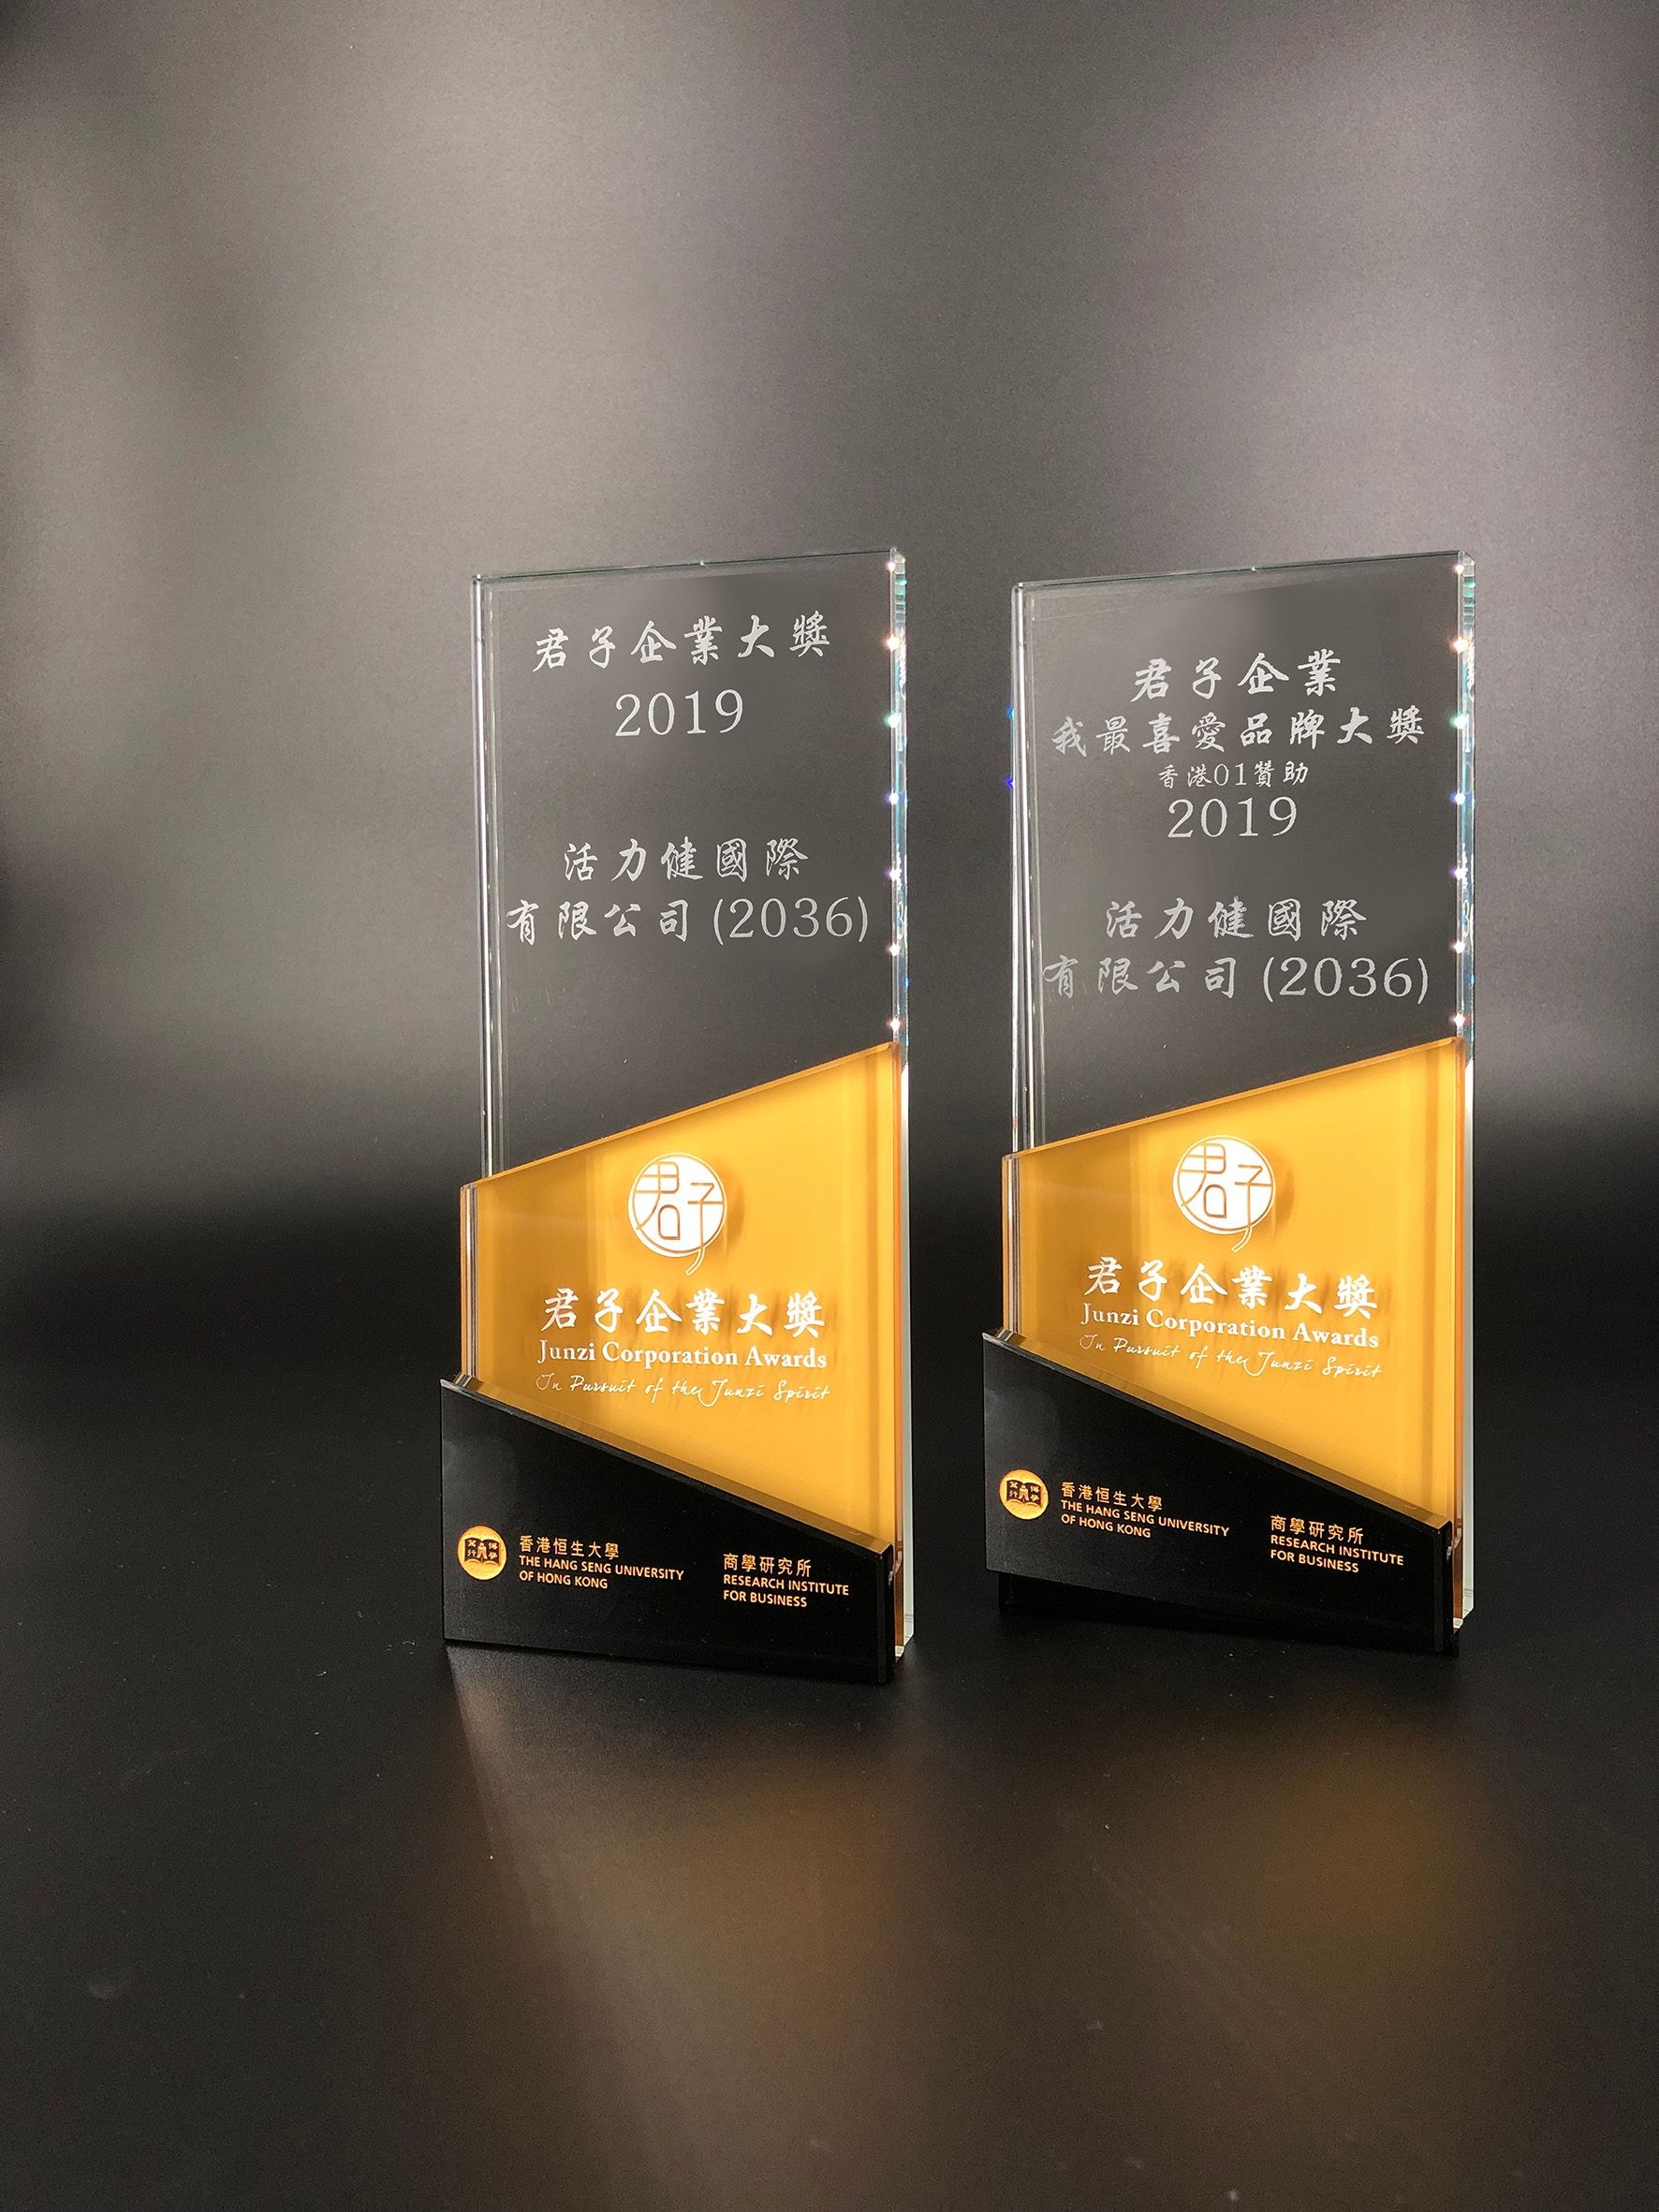 活力健國際有限公司 (2036) 榮獲『君子企業大獎』及『君子企業．我最喜愛品牌大獎』。